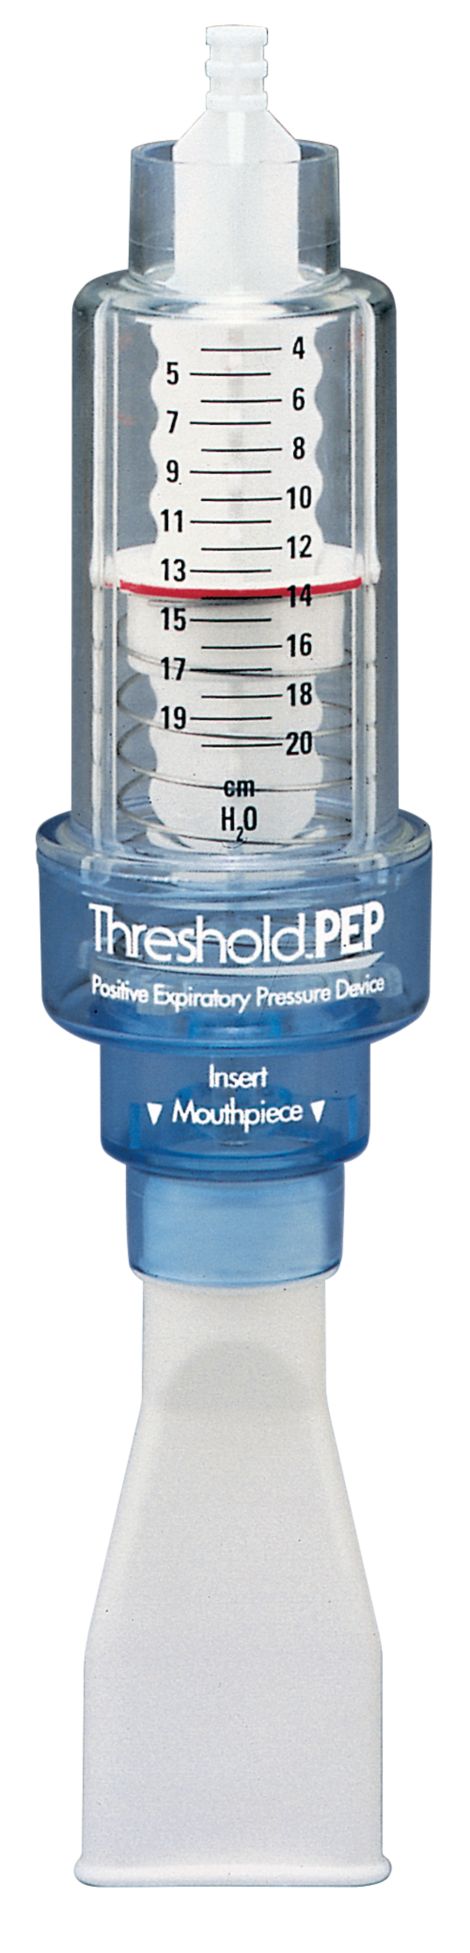 Дыхательный тренажер Philips Respironics Threshold. Threshold Pep тренажёр дыхательный. Дыхательный тренажёр Threshold Pep hh1333/00. Дыхательный тренажер Philips Respironics Threshold IMT HH. Дыхательный тренажер threshold pep